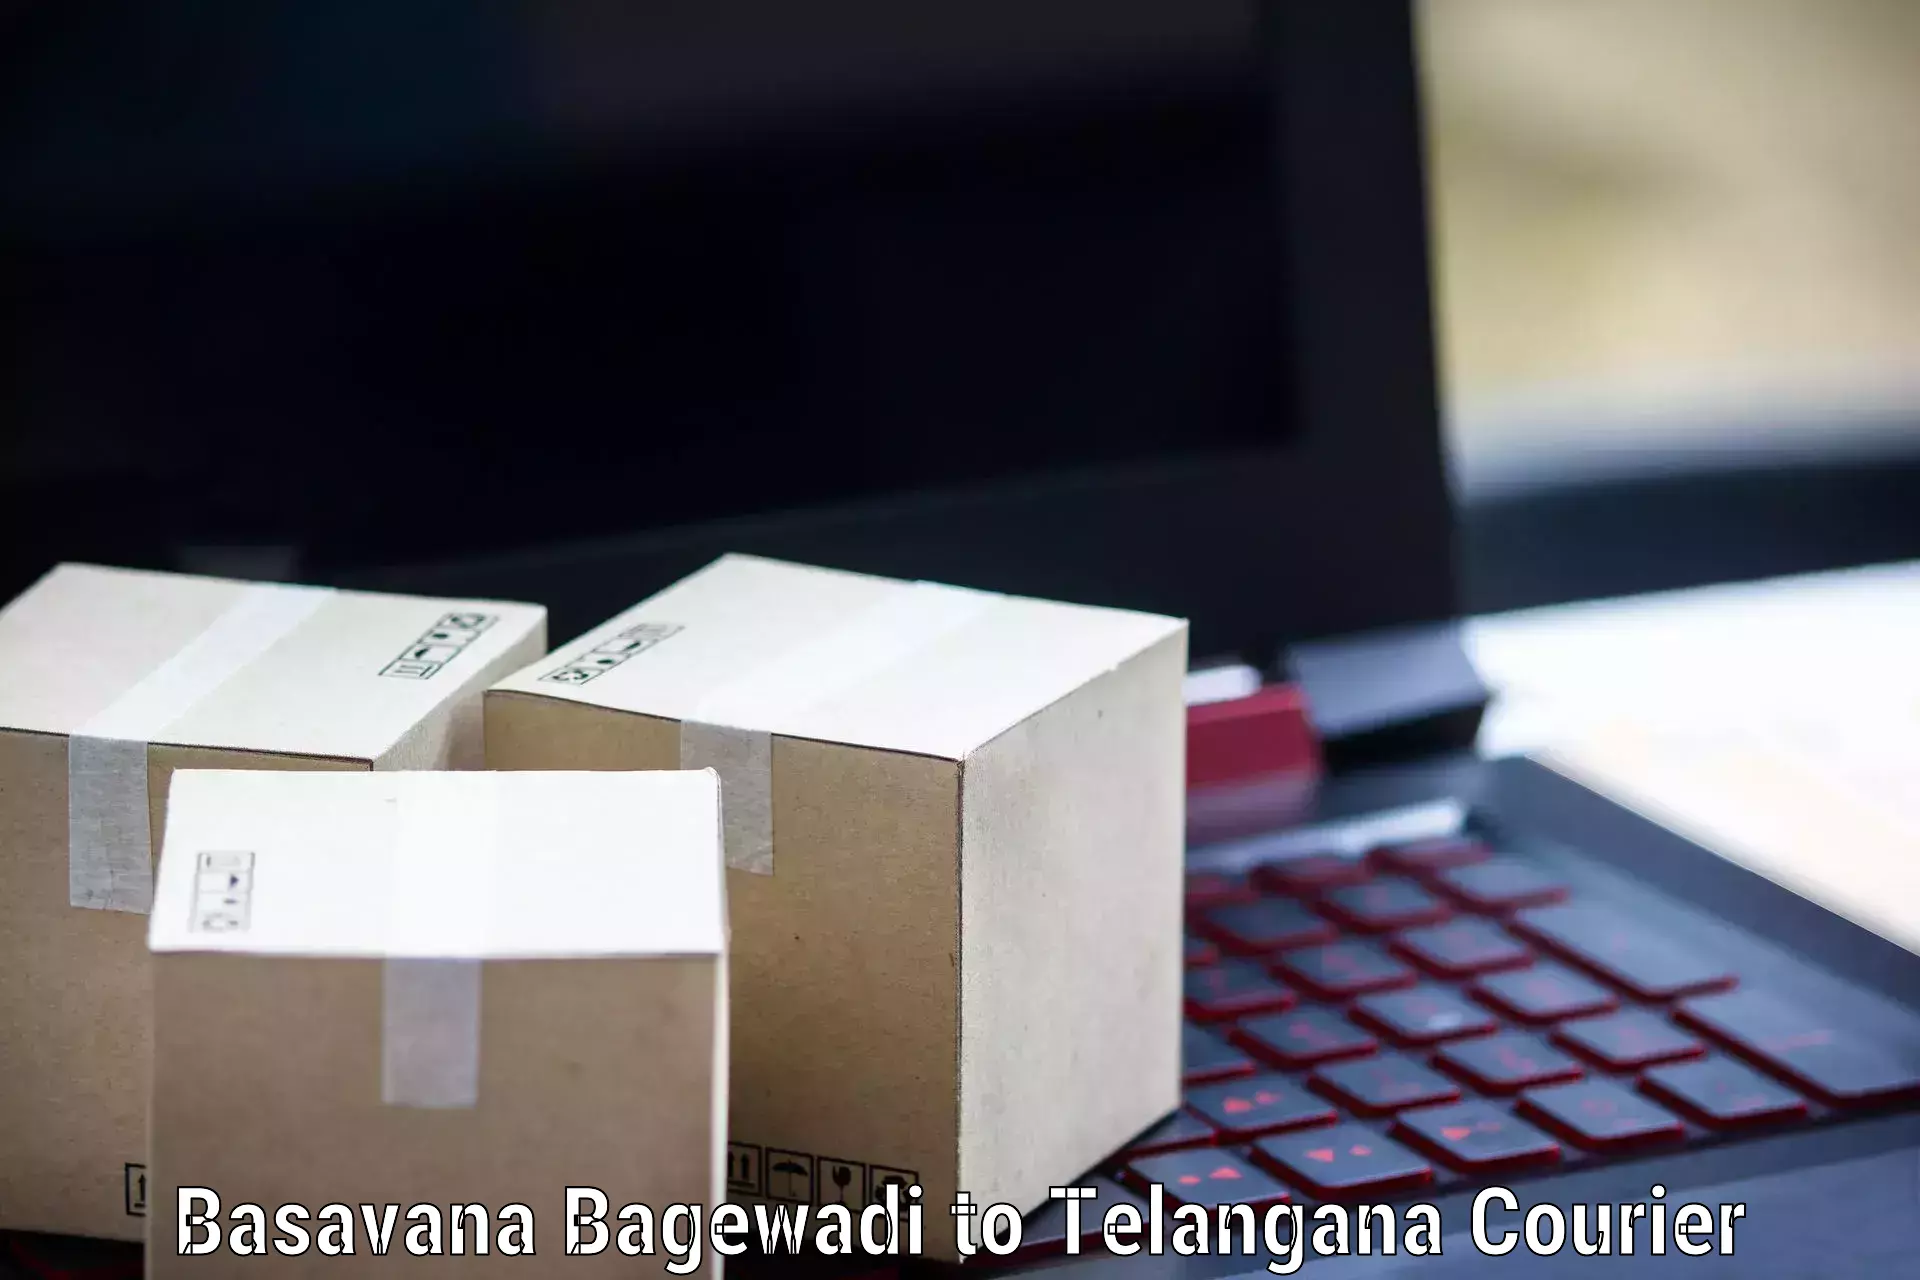 Affordable parcel service Basavana Bagewadi to Tiryani